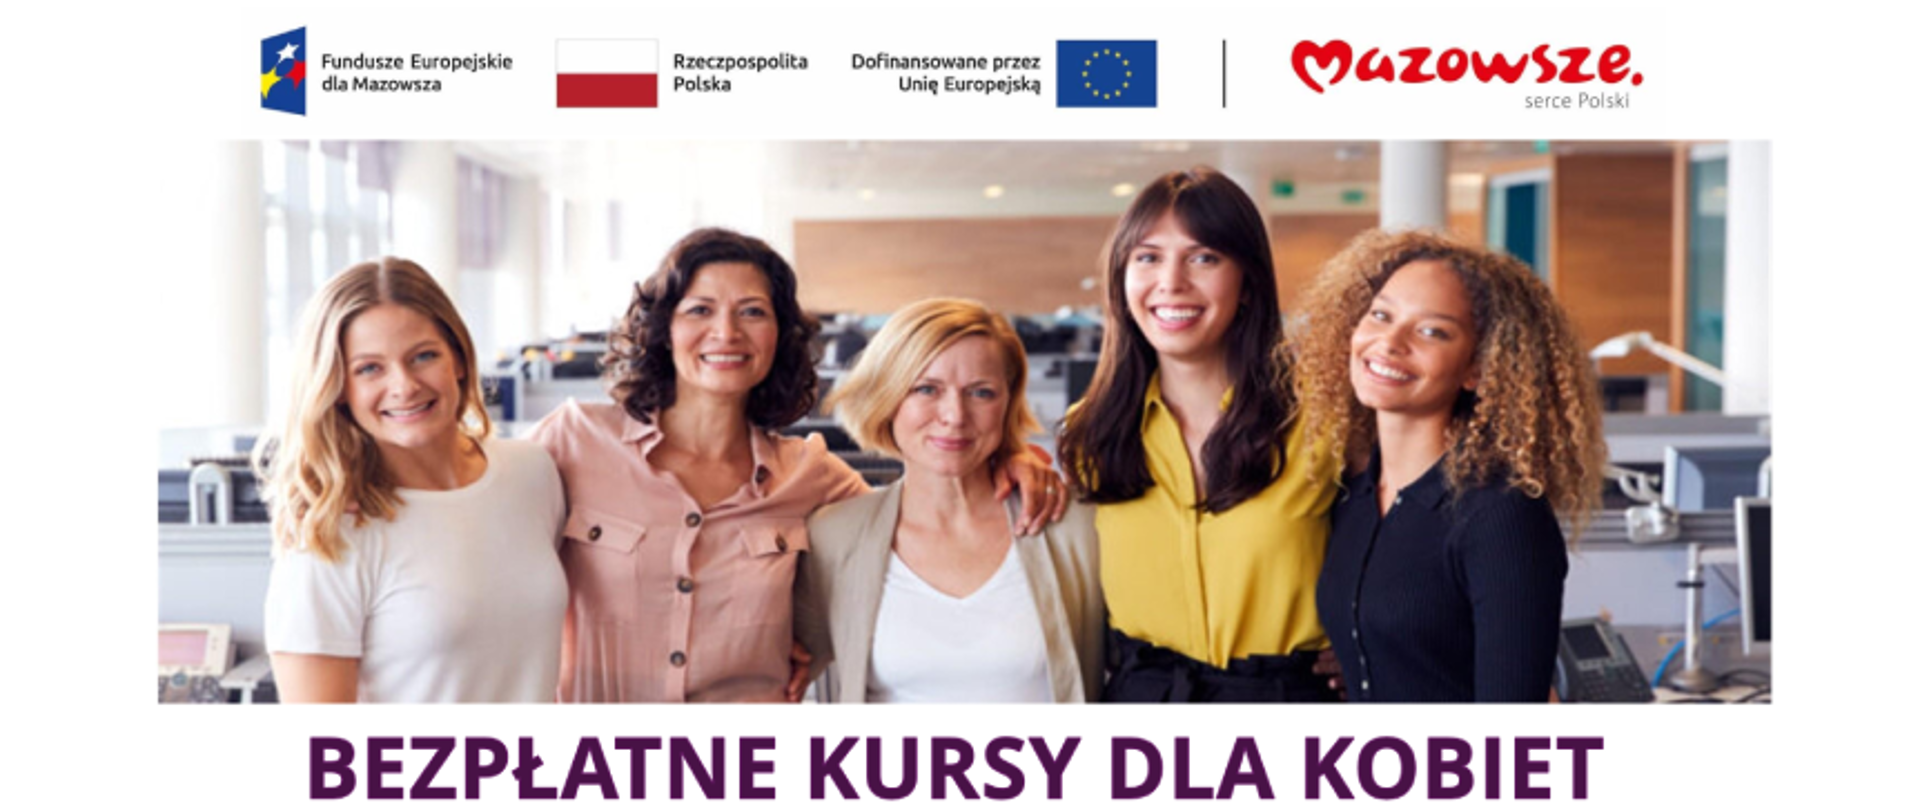 Grafika promująca projekt Akademia kobiet oferujący bezpłatne kursy dla Kobiet. Na projekcie widzimy pięć stojących obok siebie kobiet w różnym wieku na tle przestrzeni biurowej. Pod zdjęciem podpis Bezpłatne Kursy dla Kobiet. Powyżej następujące logotypy: Fundusze Europejskie dla Mazowsza, Rzeczpospolita Polska (biało-czerwona flaga), Dofinansowane przez Unię Europejską (faga Unii Europejskiej), Mazowsze Serce Polski.